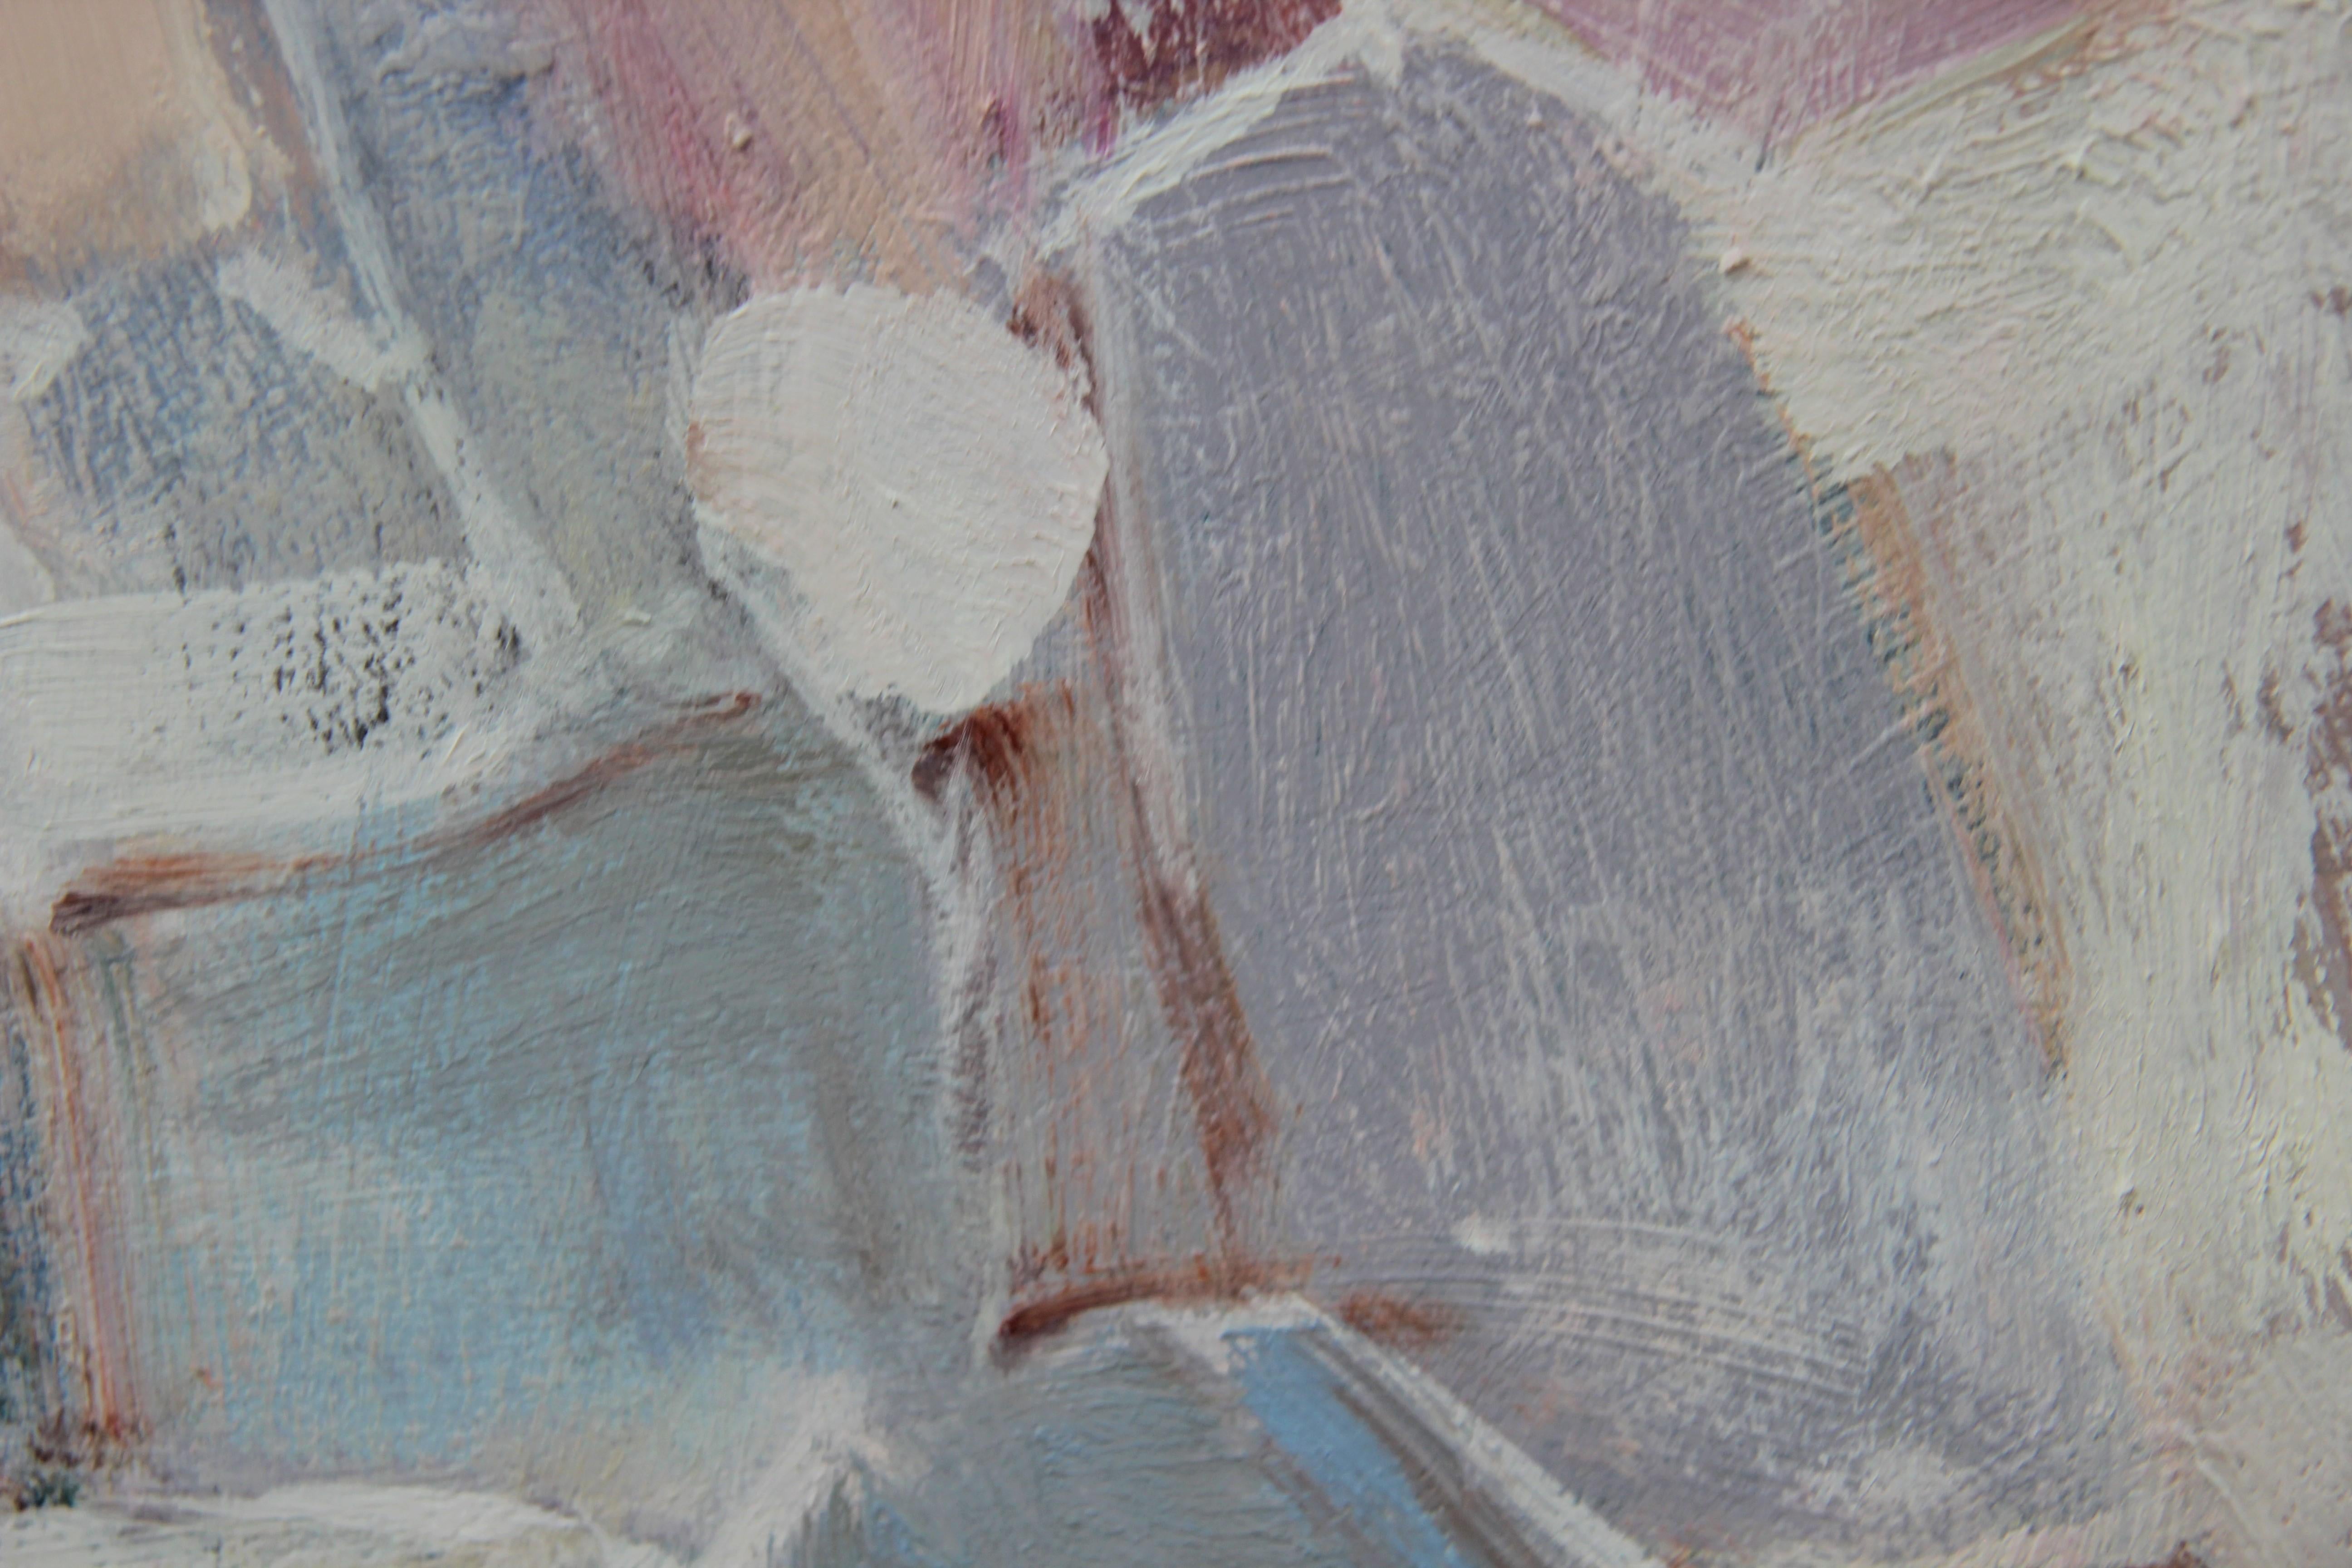 Peinture abstraite en blocs de couleur aux tons pastel qui incorpore des tons bleus, blancs et de pêche. Actuellement suspendu dans un cadre neutre de couleur blanche. 

Dimensions sans cadre : H 36 in. x L 48 in. x P 1.5 in.

Biographie de